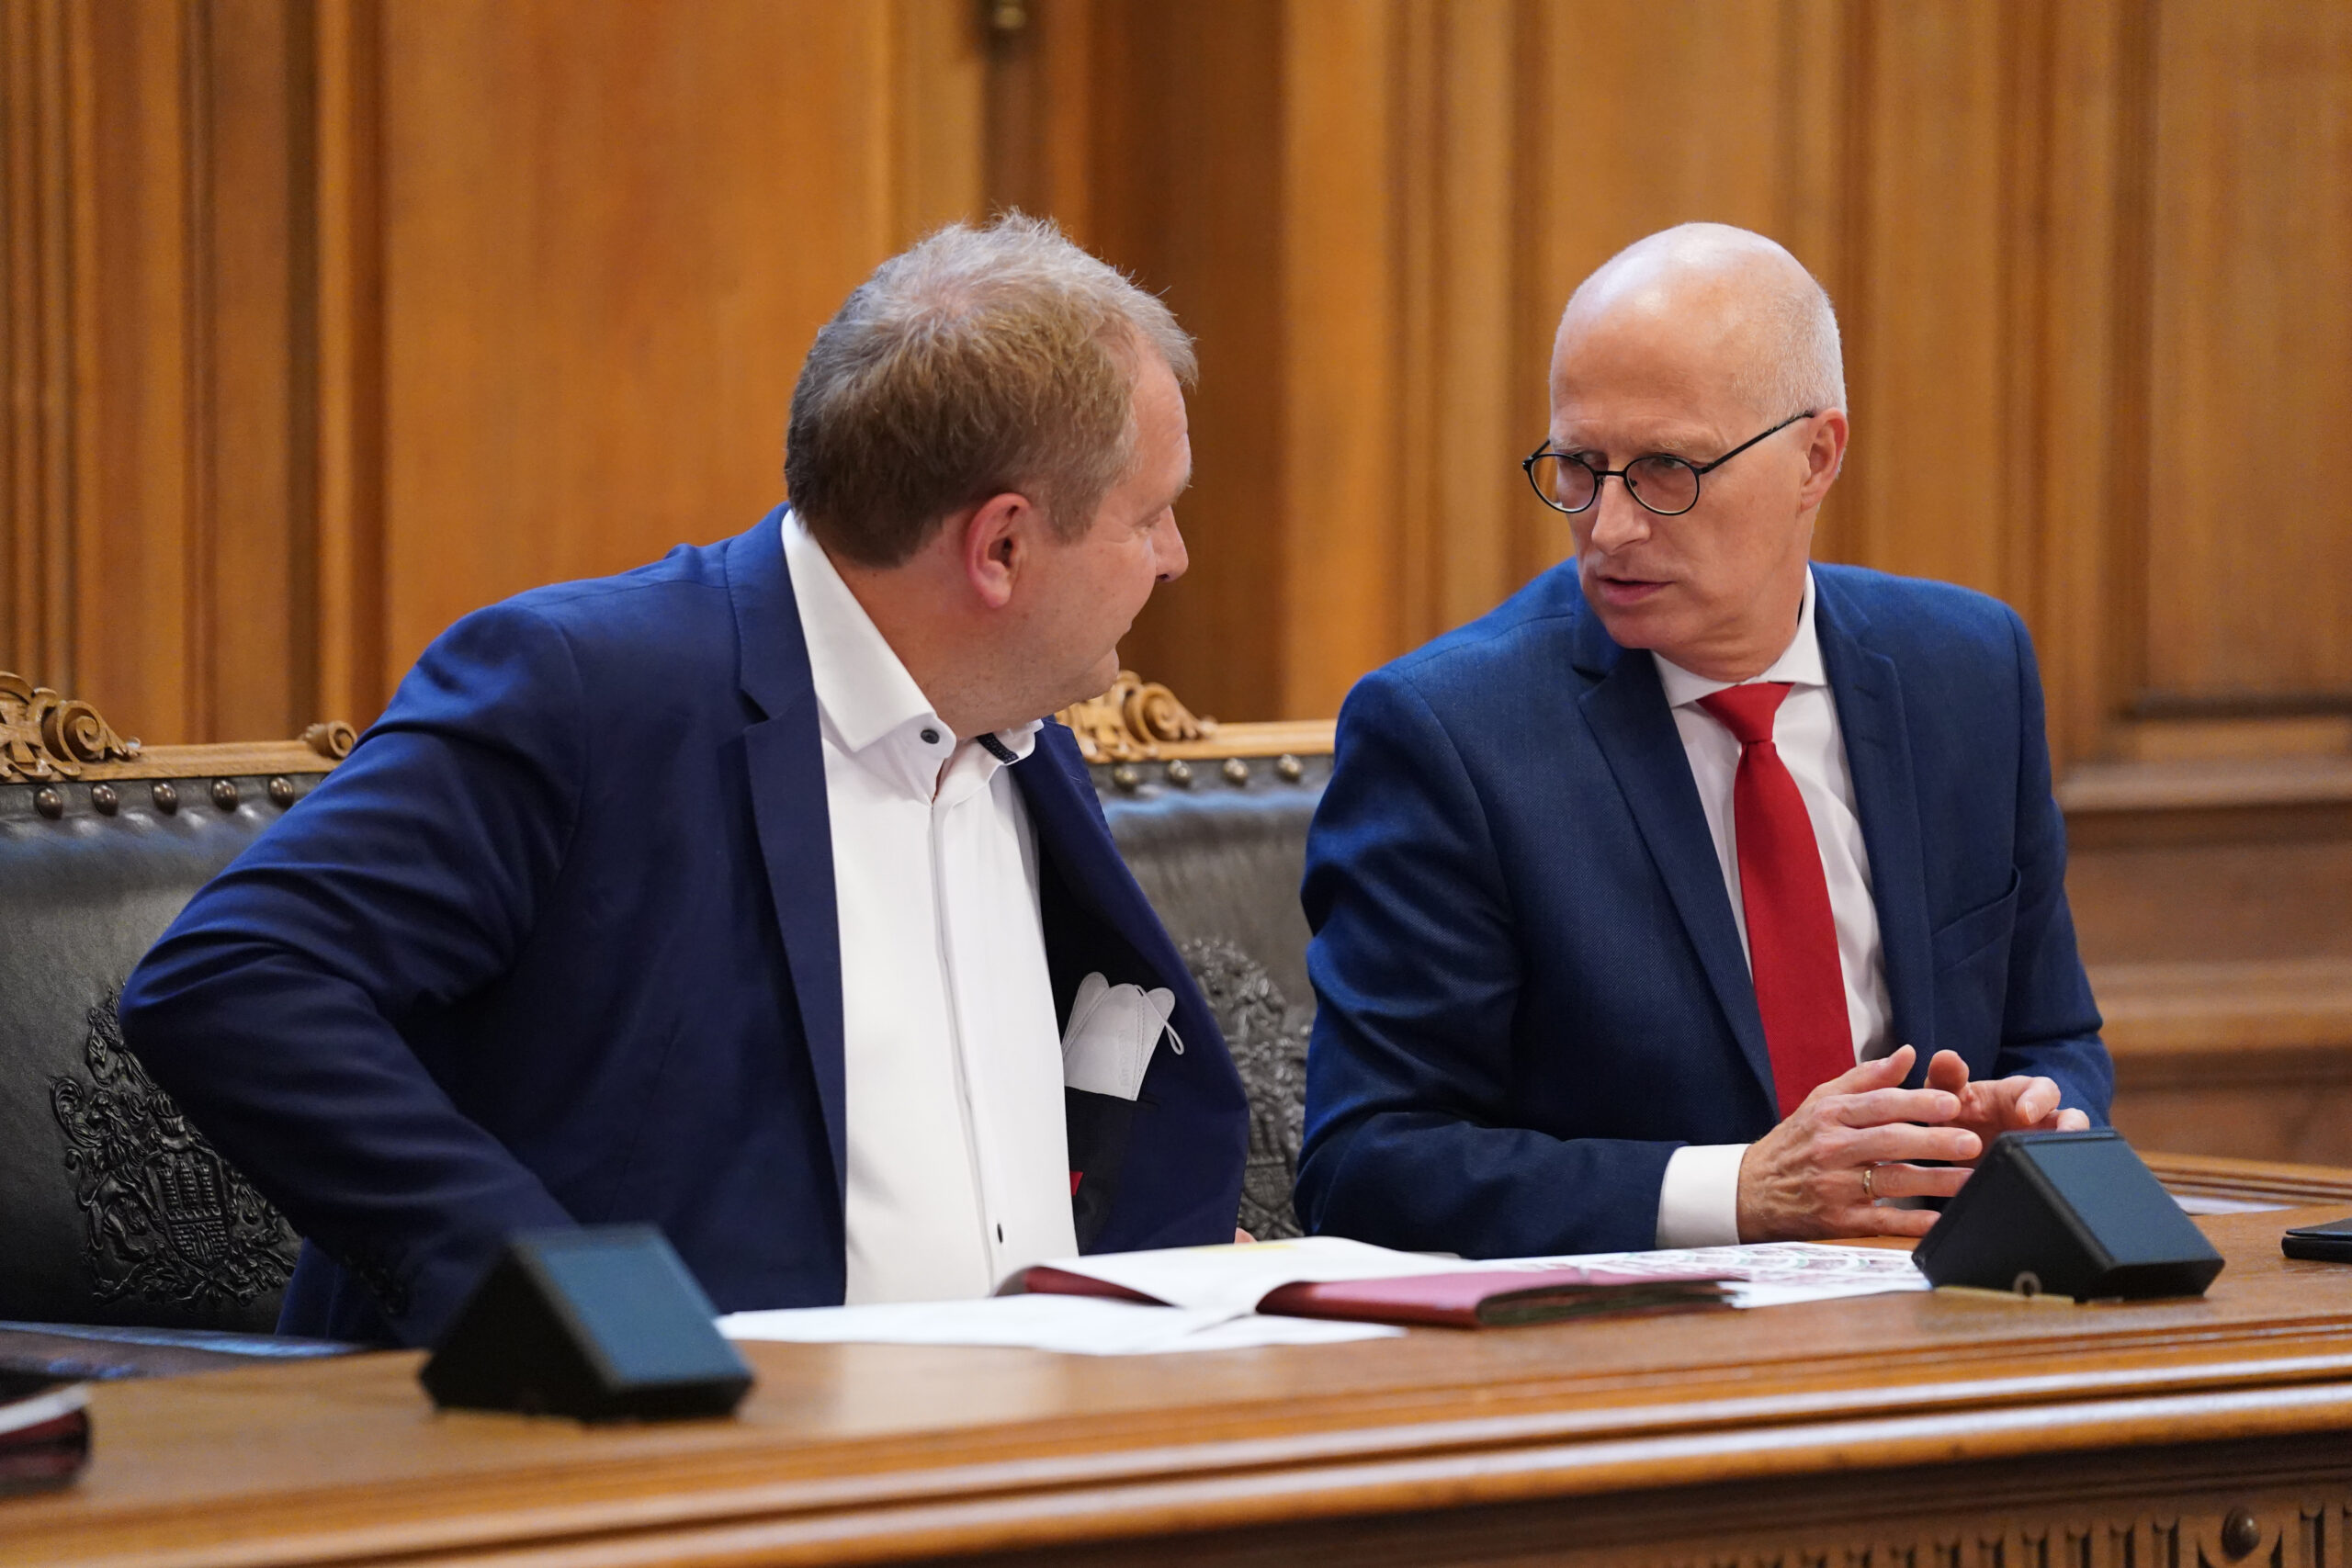 Umweltsenator Jens Kerstan (Grüne) und Bürgermeister Peter Tschentscher (SPD). Die beiden Koalitionspartner ringen um die Macht in Hamburg. (Archivbild)